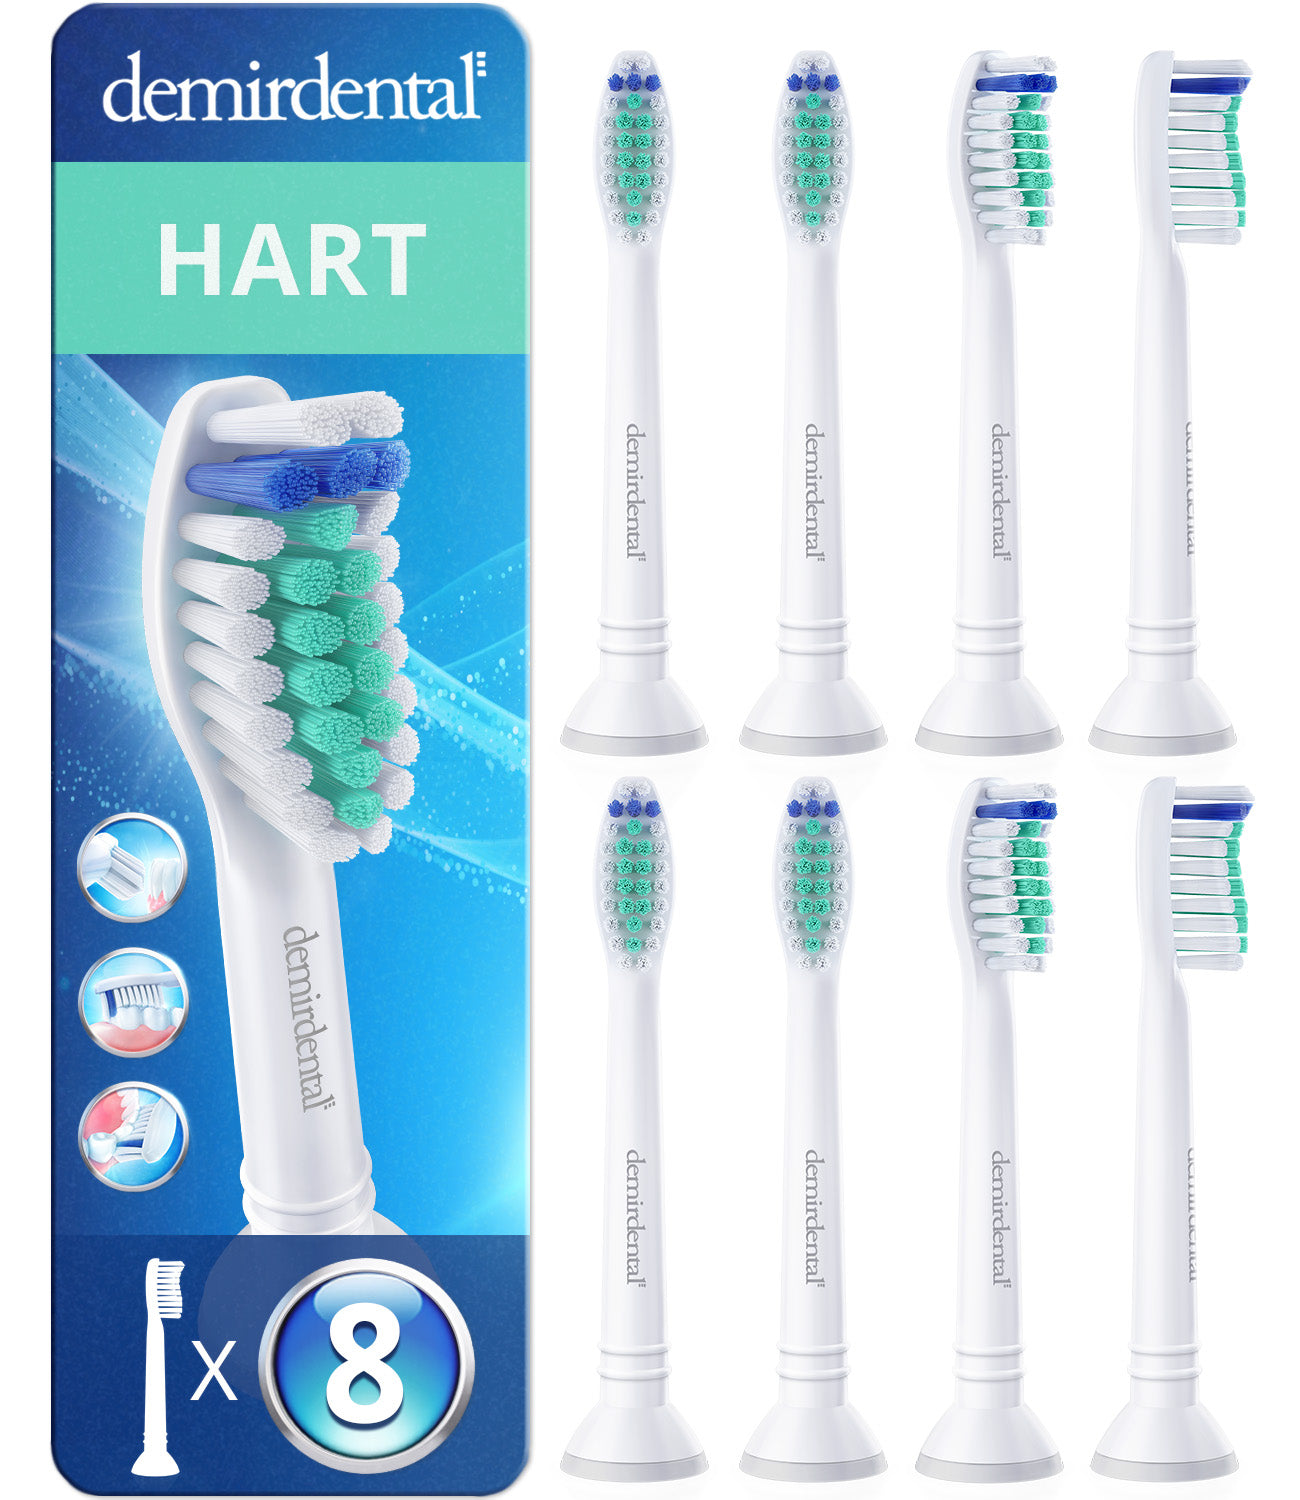 Hard | Opzetborstels compatibel met Philips Sonicare tandenborstels | Vit